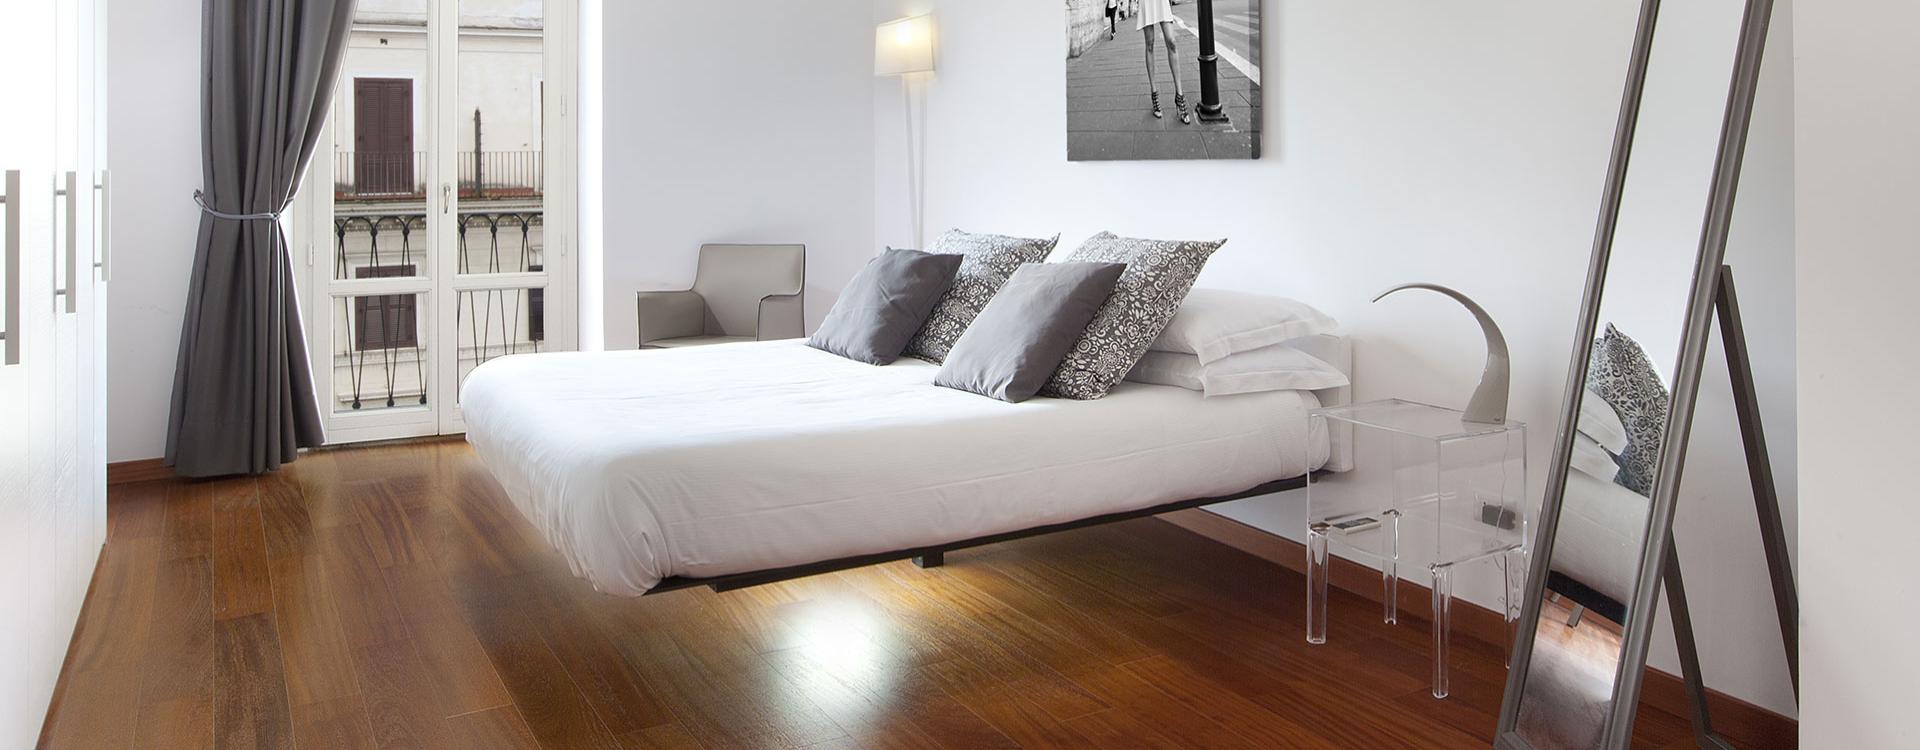 orianahomelroma it offerta-speciale-soggiorni-lunghi-a-roma-in-luxury-apartment-in-pieno-centro 002